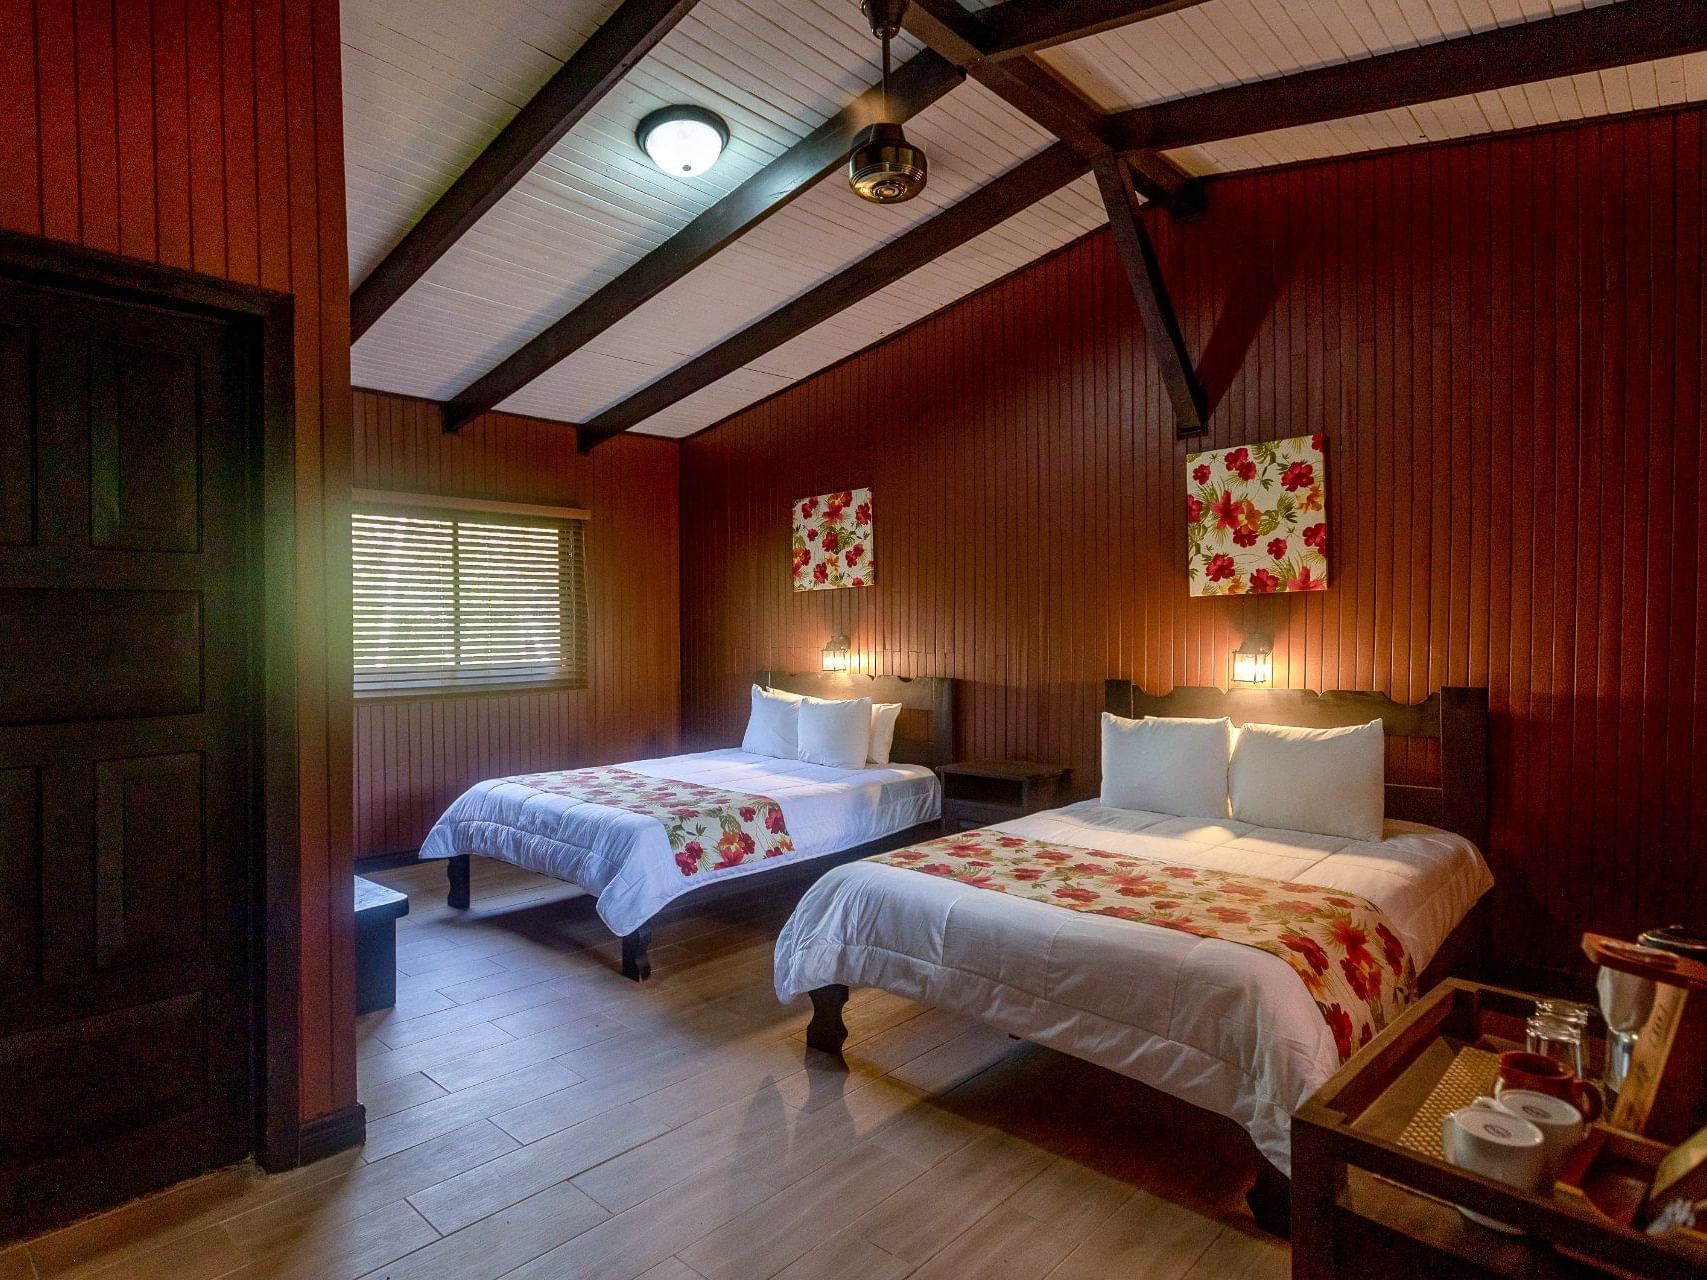 2 Beds & nightstand in Hacienda Rooms at Buena Vista Del Rincon